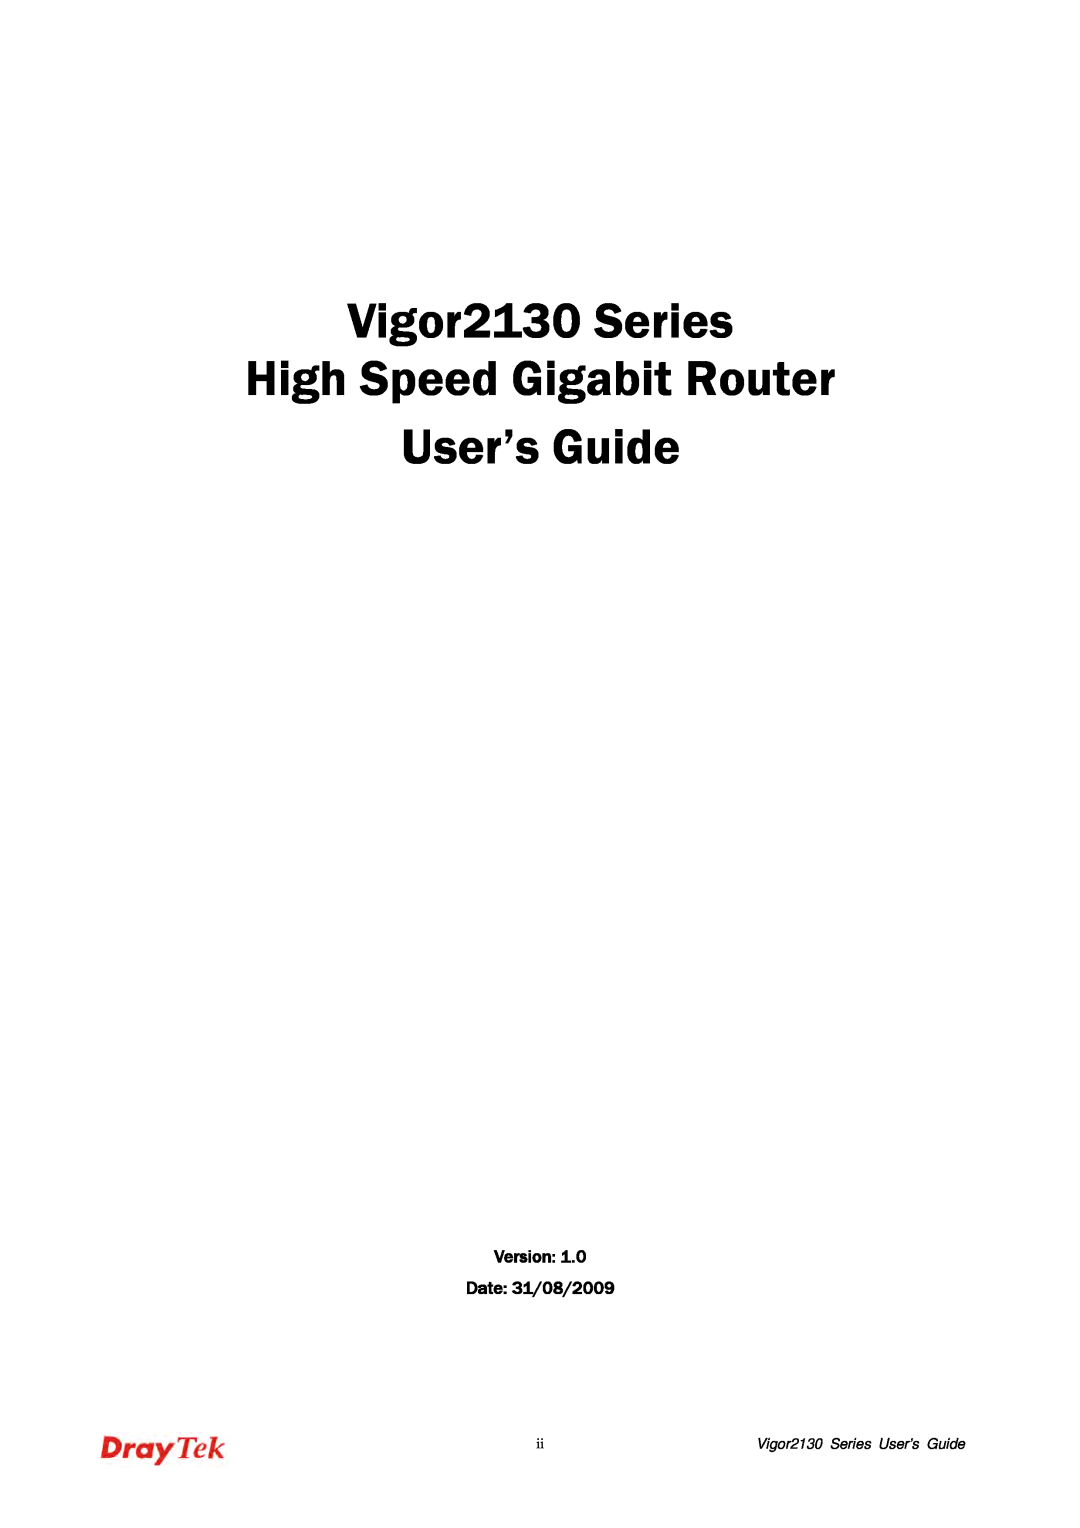 Draytek Vigor2130 Series High Speed Gigabit Router User’s Guide, Version Date 31/08/2009, Vigor2130 Series User’s Guide 